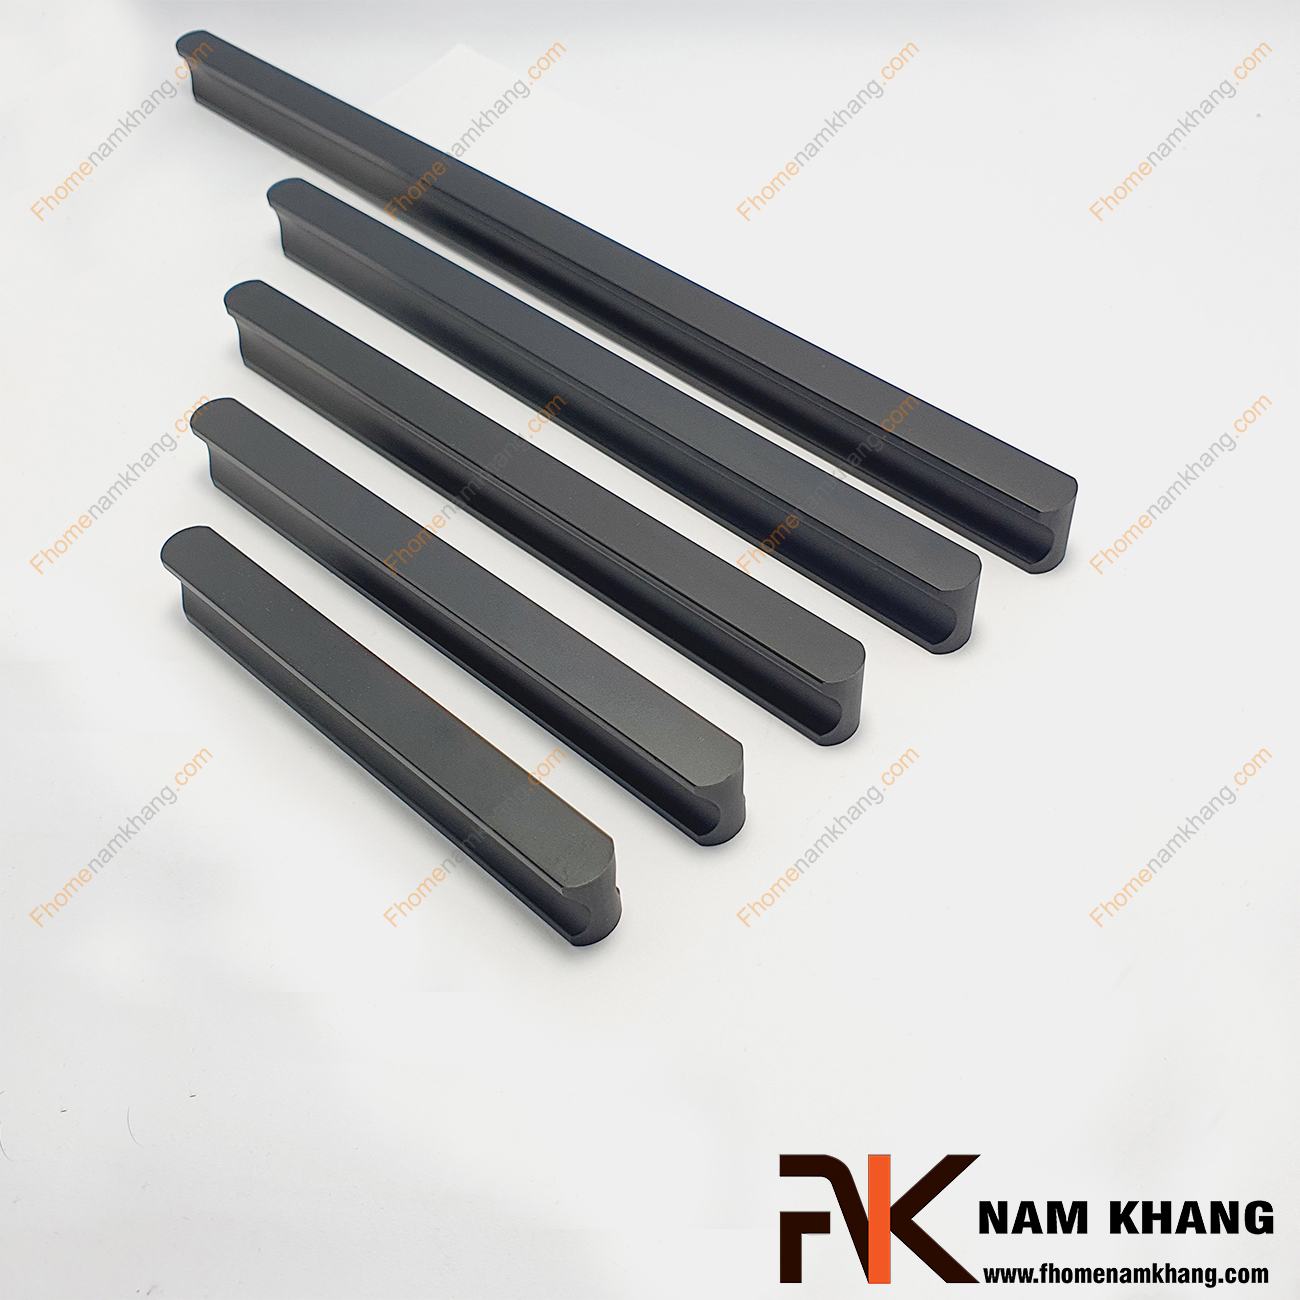 Tay nắm tủ dạng thanh dài nguyên khối màu đen NK001-DB dạng tay nắm tủ thanh dài nguyên khối được sản xuất từ chất liệu hợp kim cao cấp và xử lý bề mặt kỹ thuật cao.